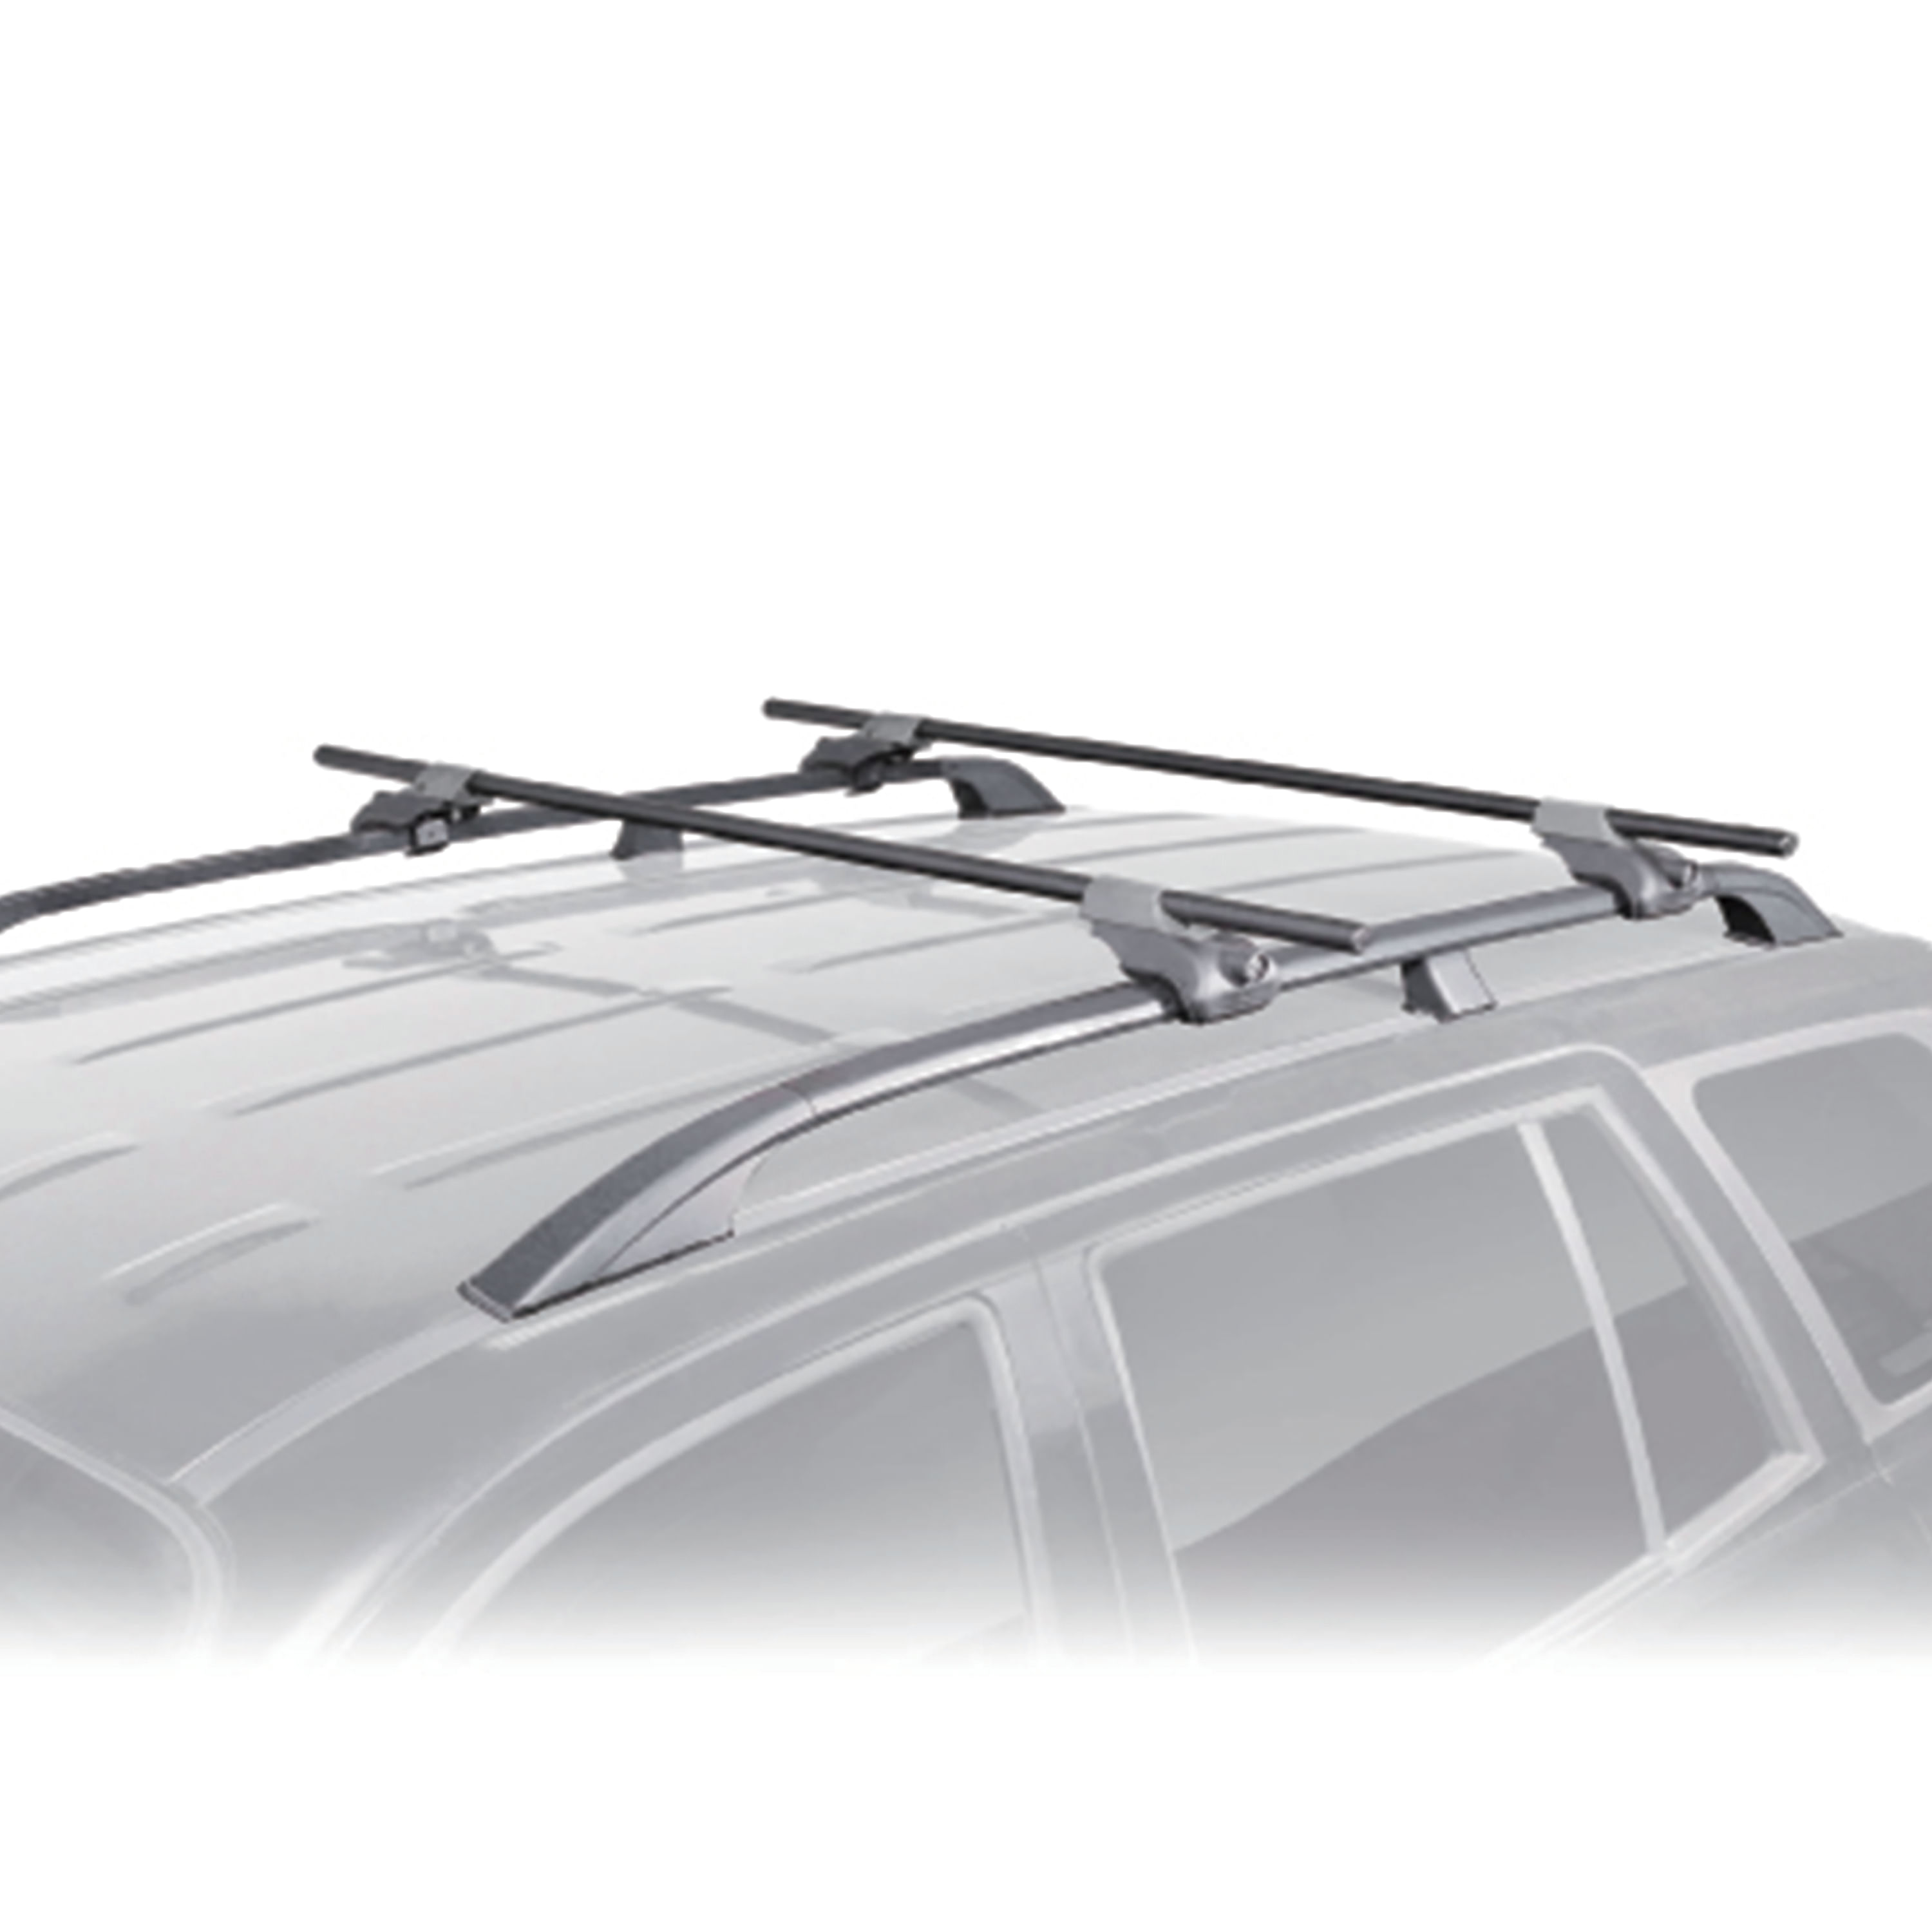 Baca de coche rígida universal para barras de techo Nova 430 - Blanco